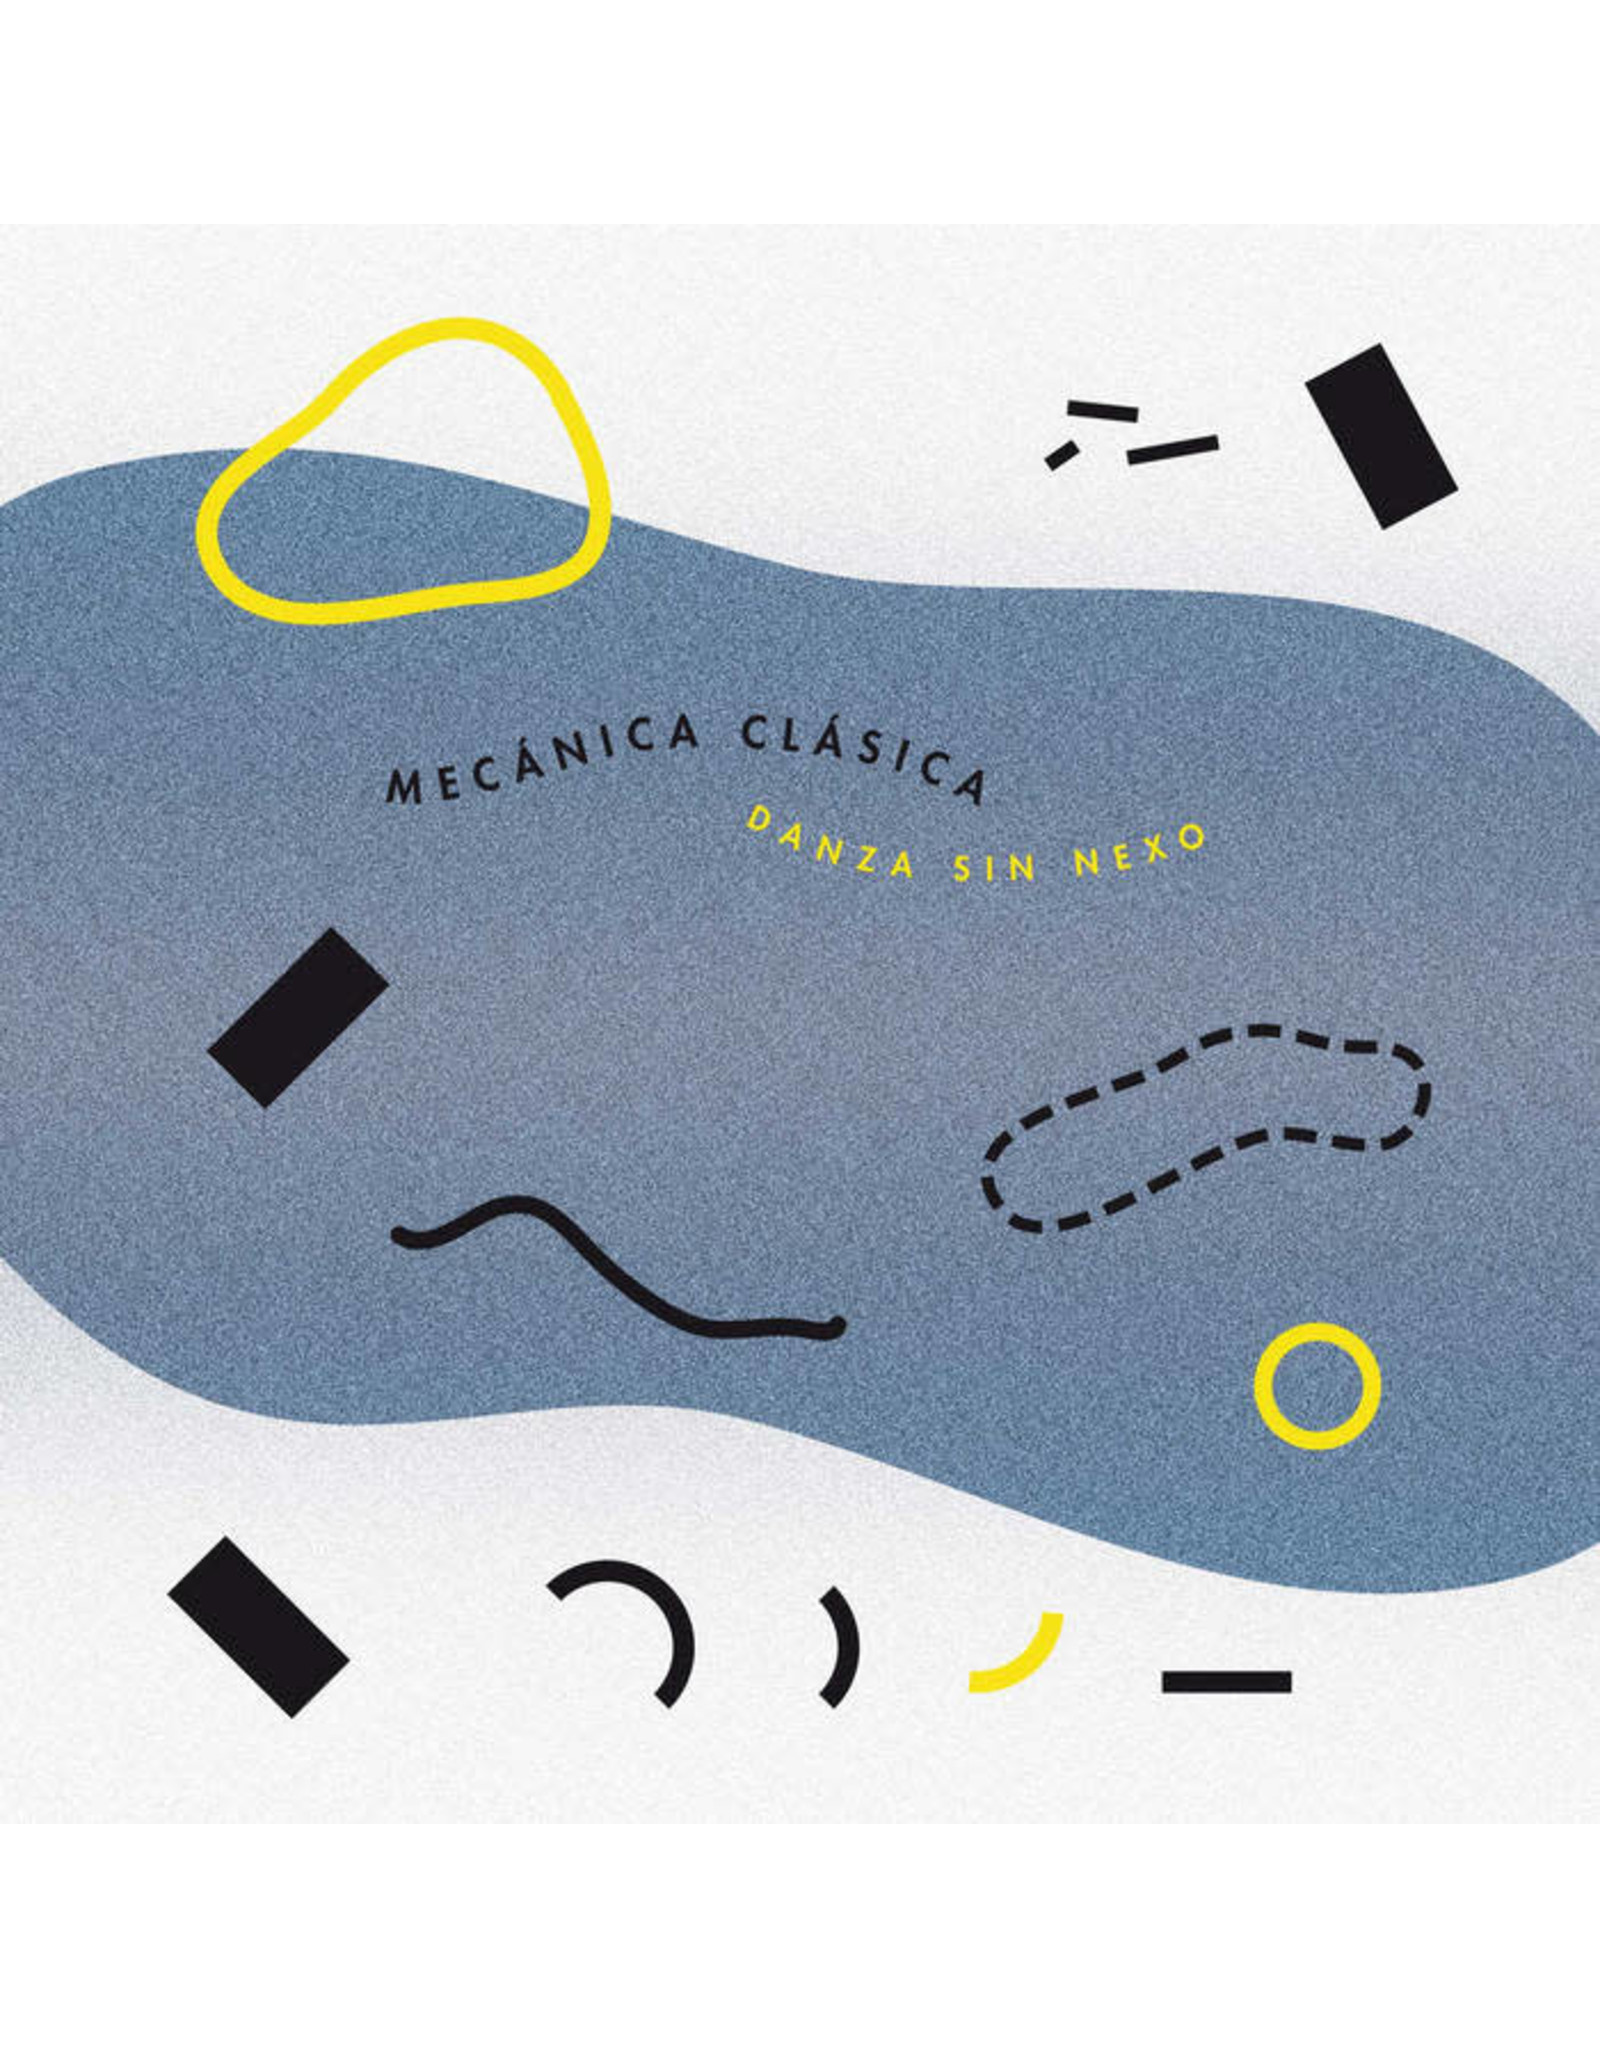 Abstrakce Mecánica Clásica: Danza Sin Nexo LP